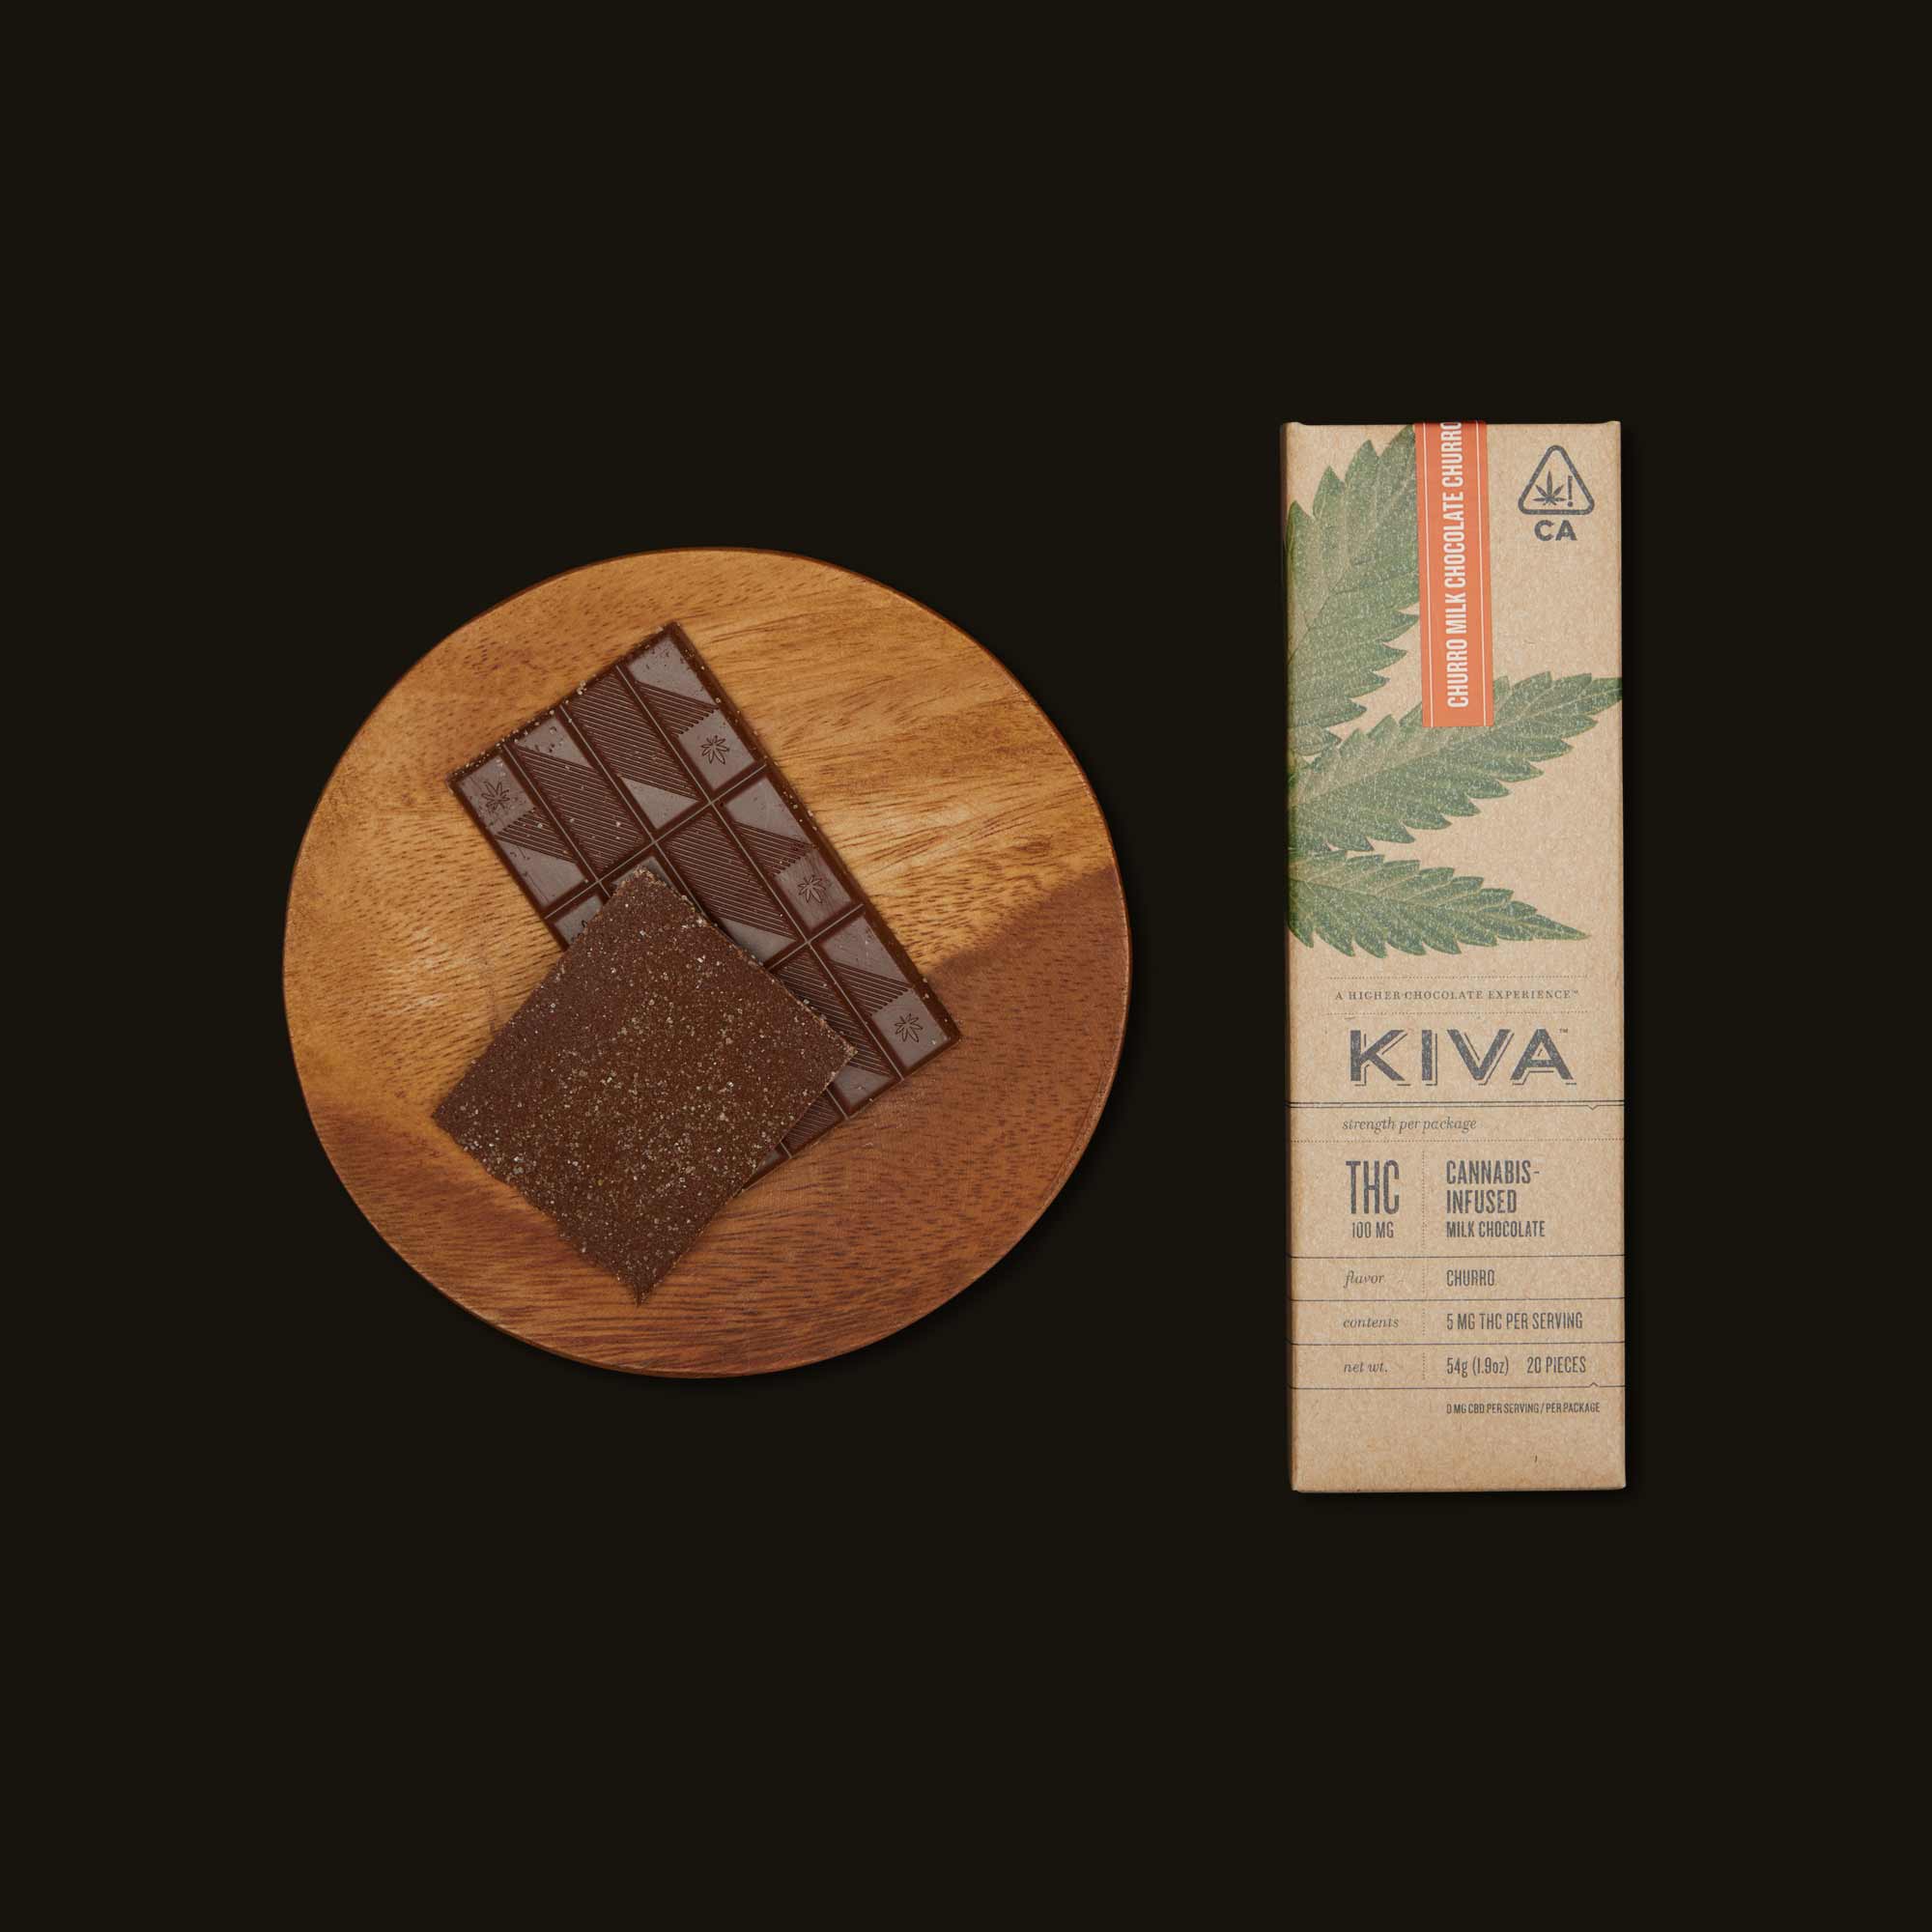 Kiva-Churro-Milk-Chocolate-Bar-Hero-CA-1568-793357